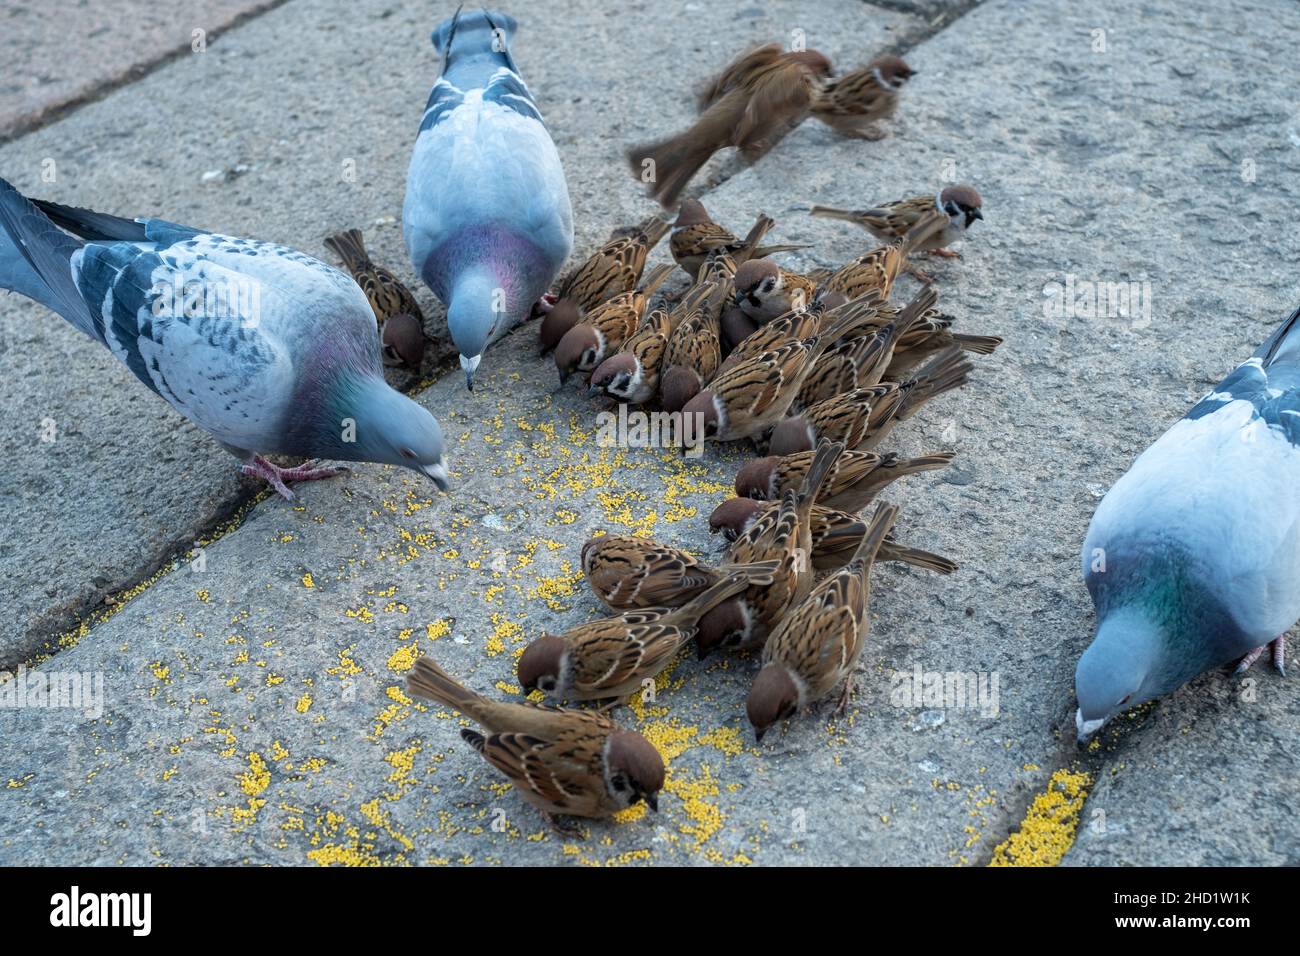 Eine Gruppe von Sperlingen und Tauben essen zusammen an einem Touristenort in Peking, China. Stockfoto